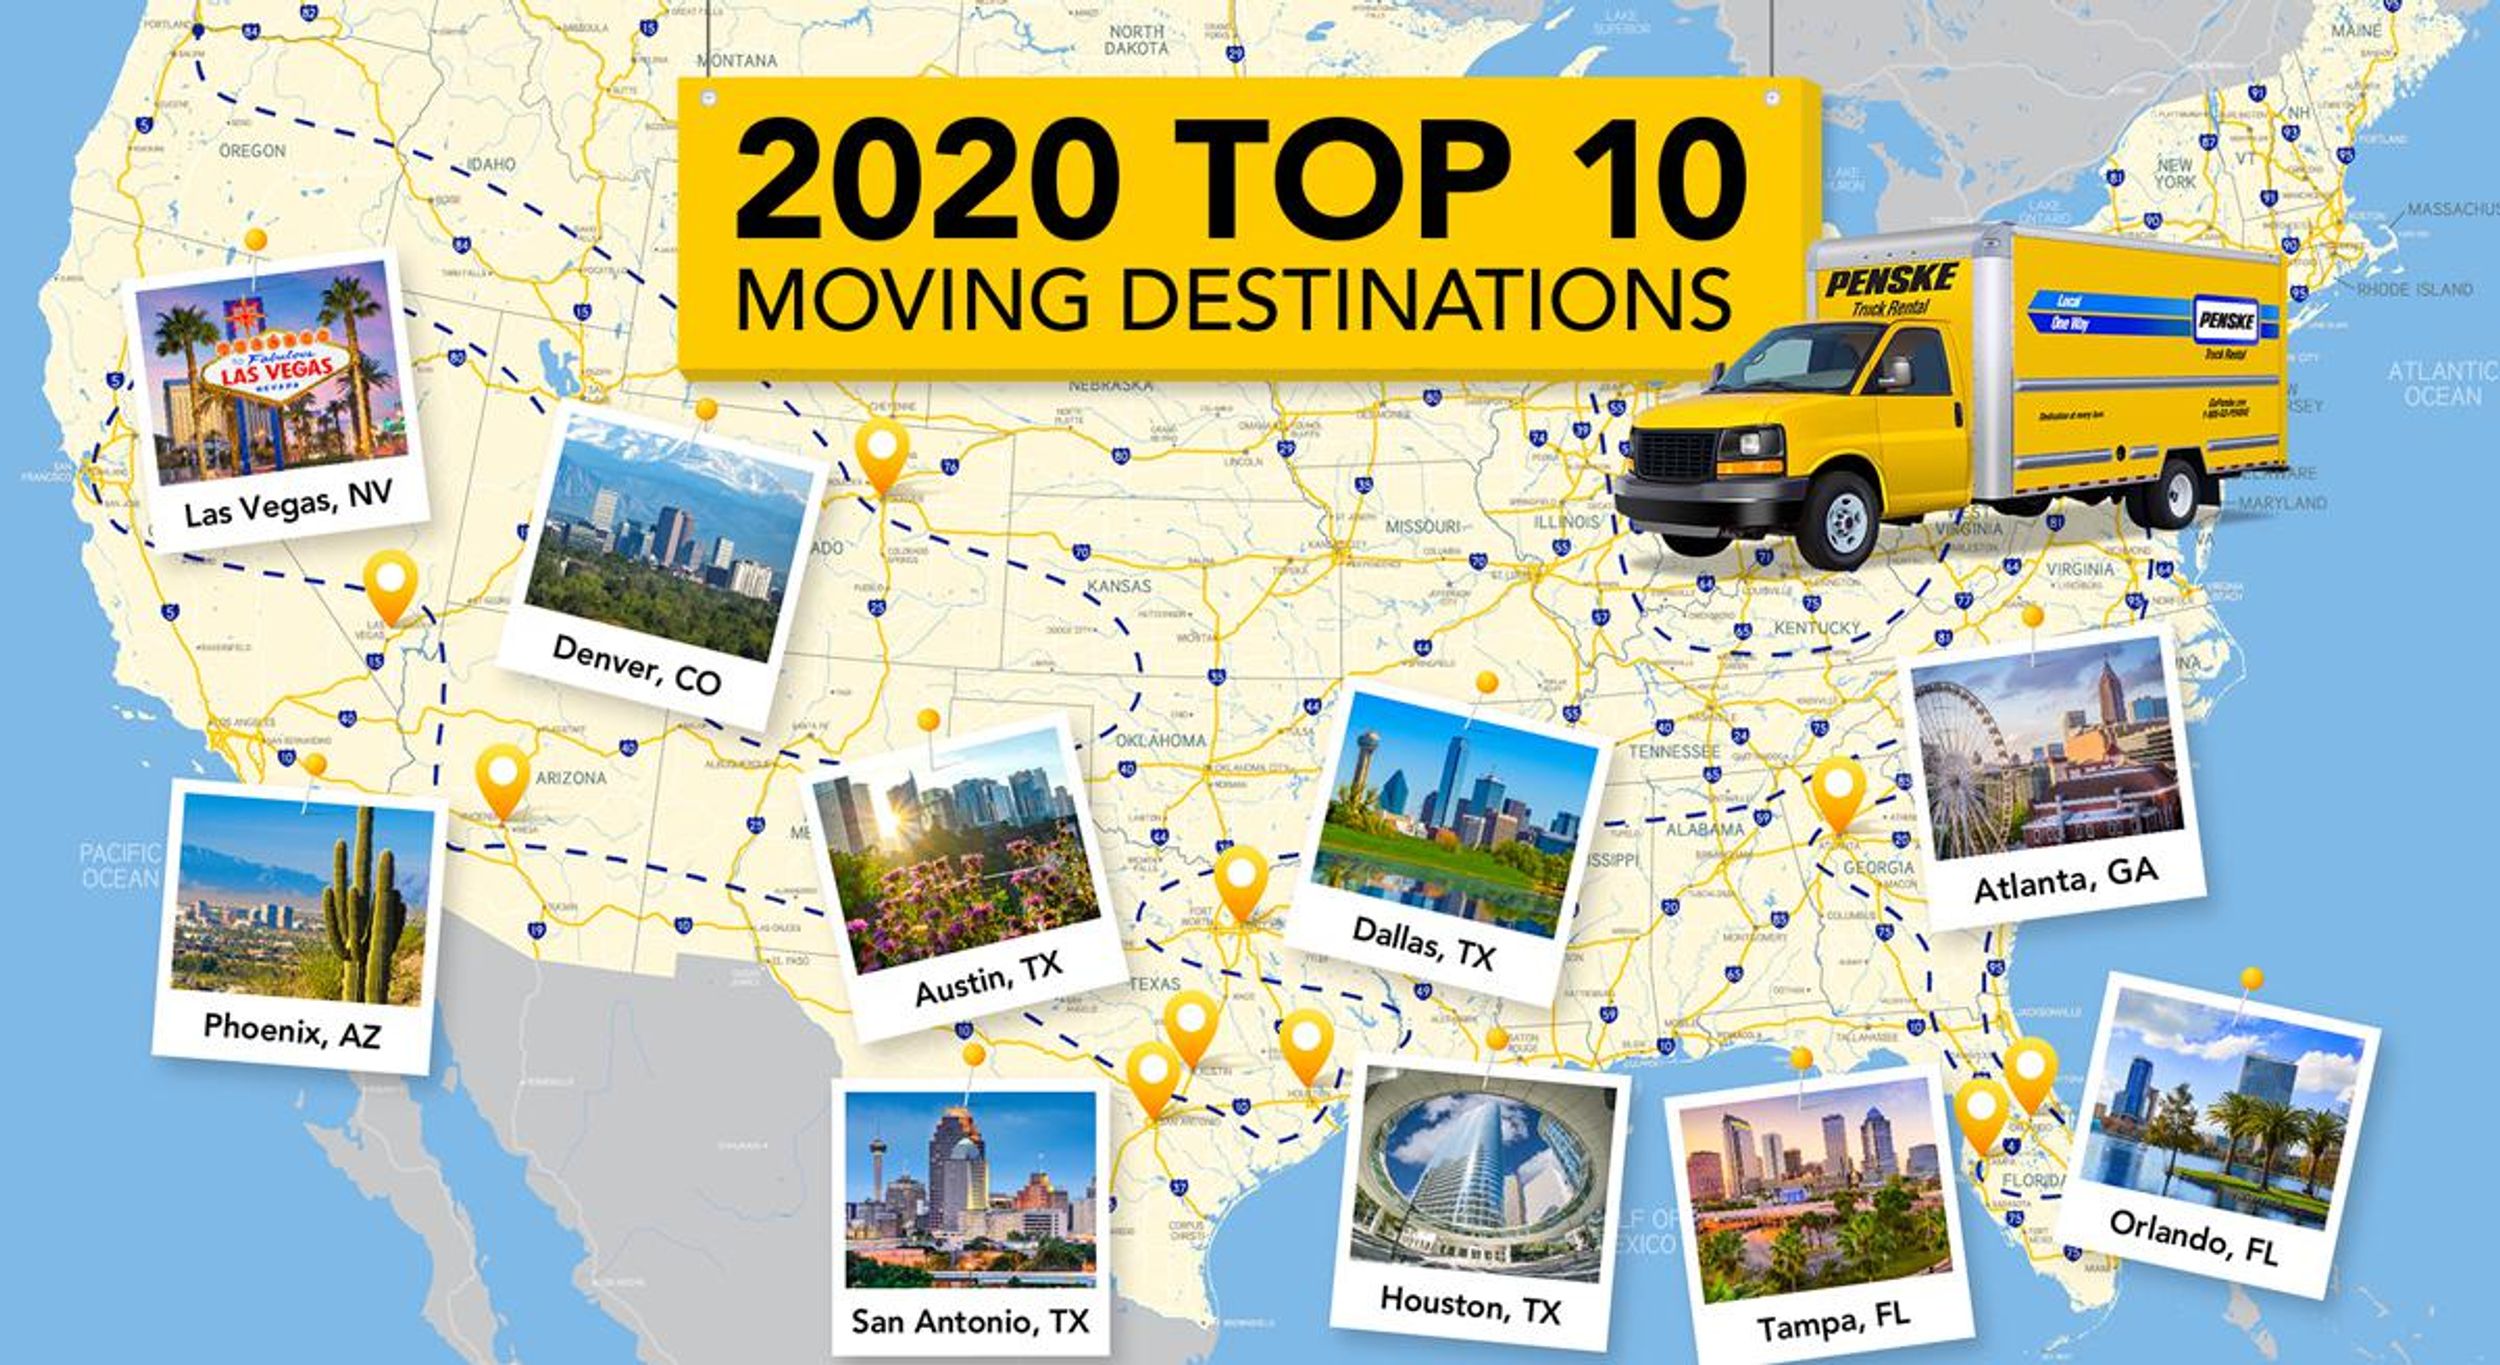 2020 Top 10 Moving Destinations